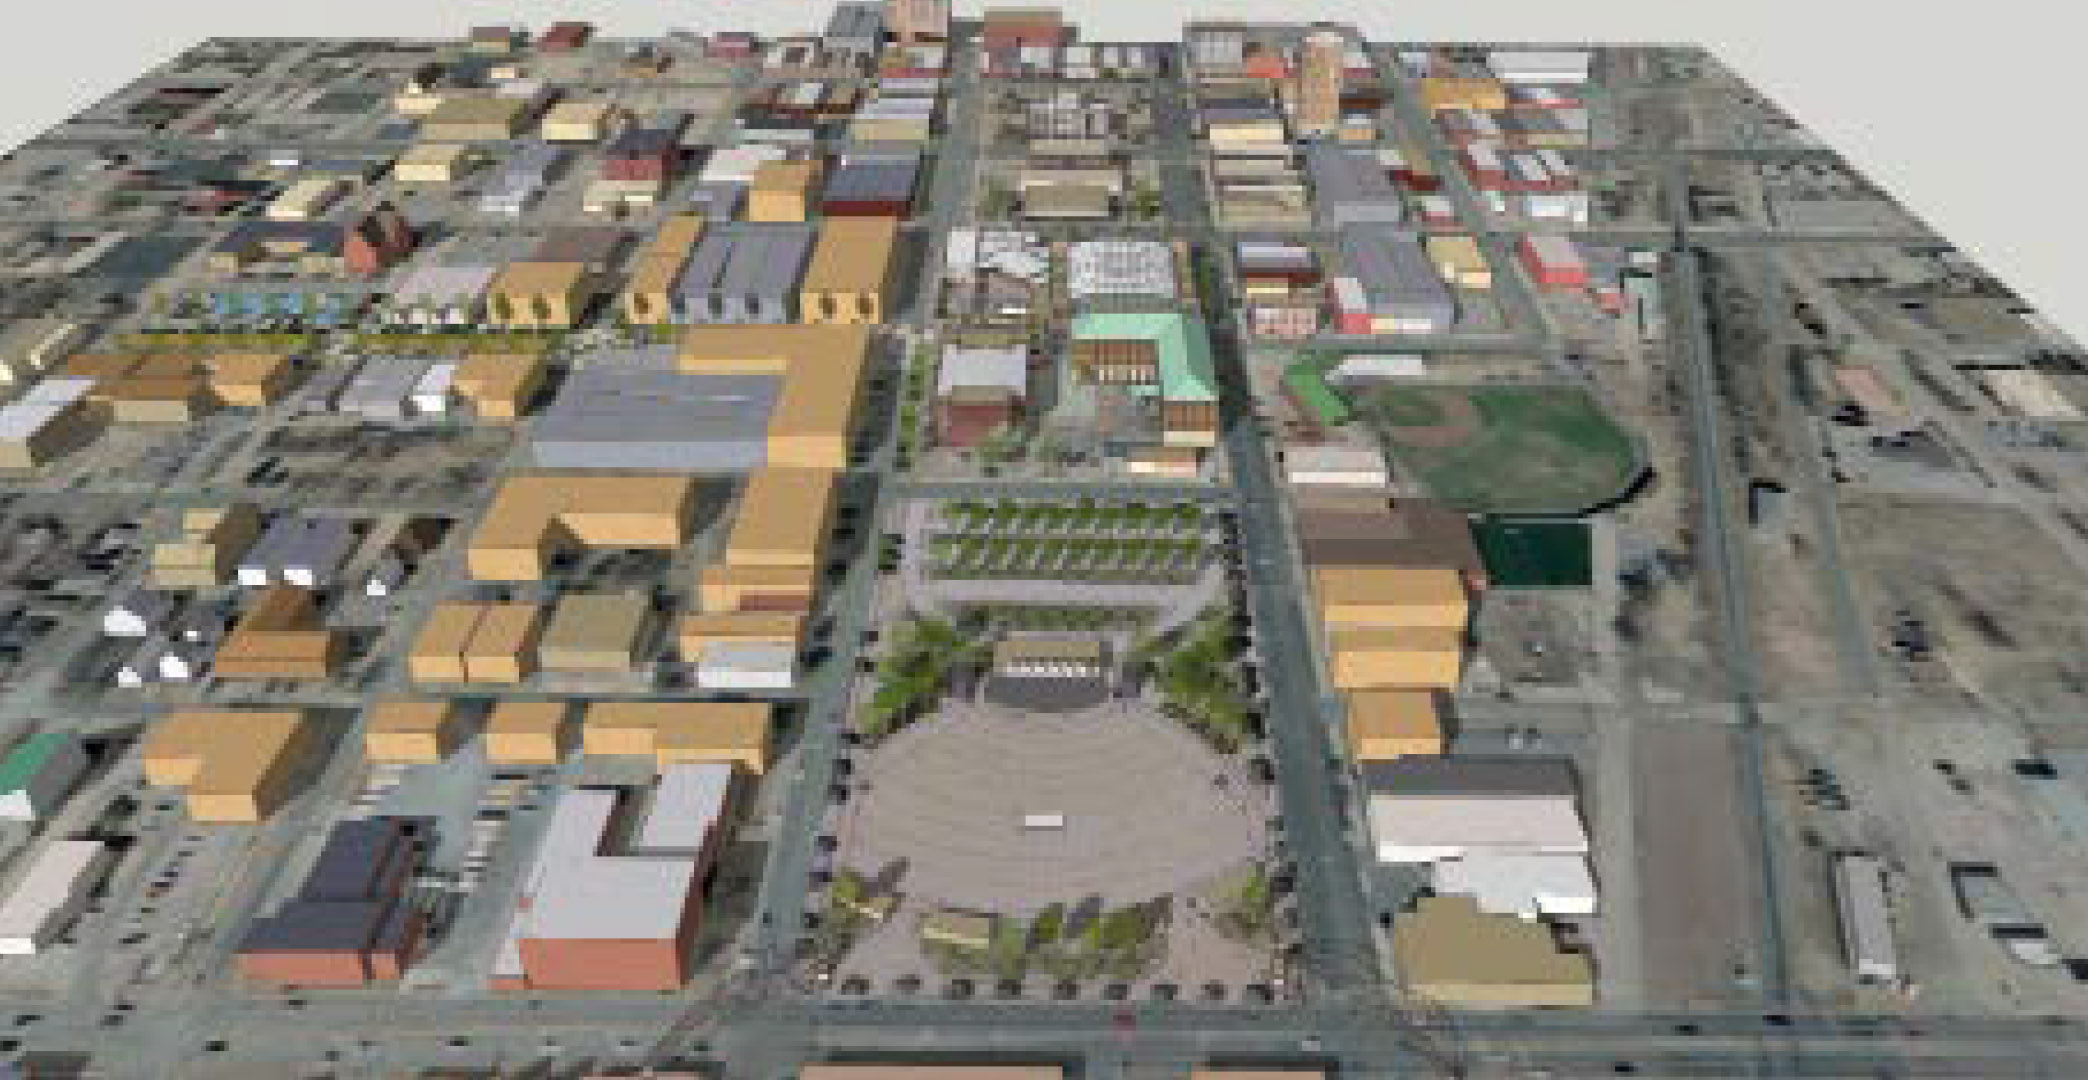 Downtown Enid Plan